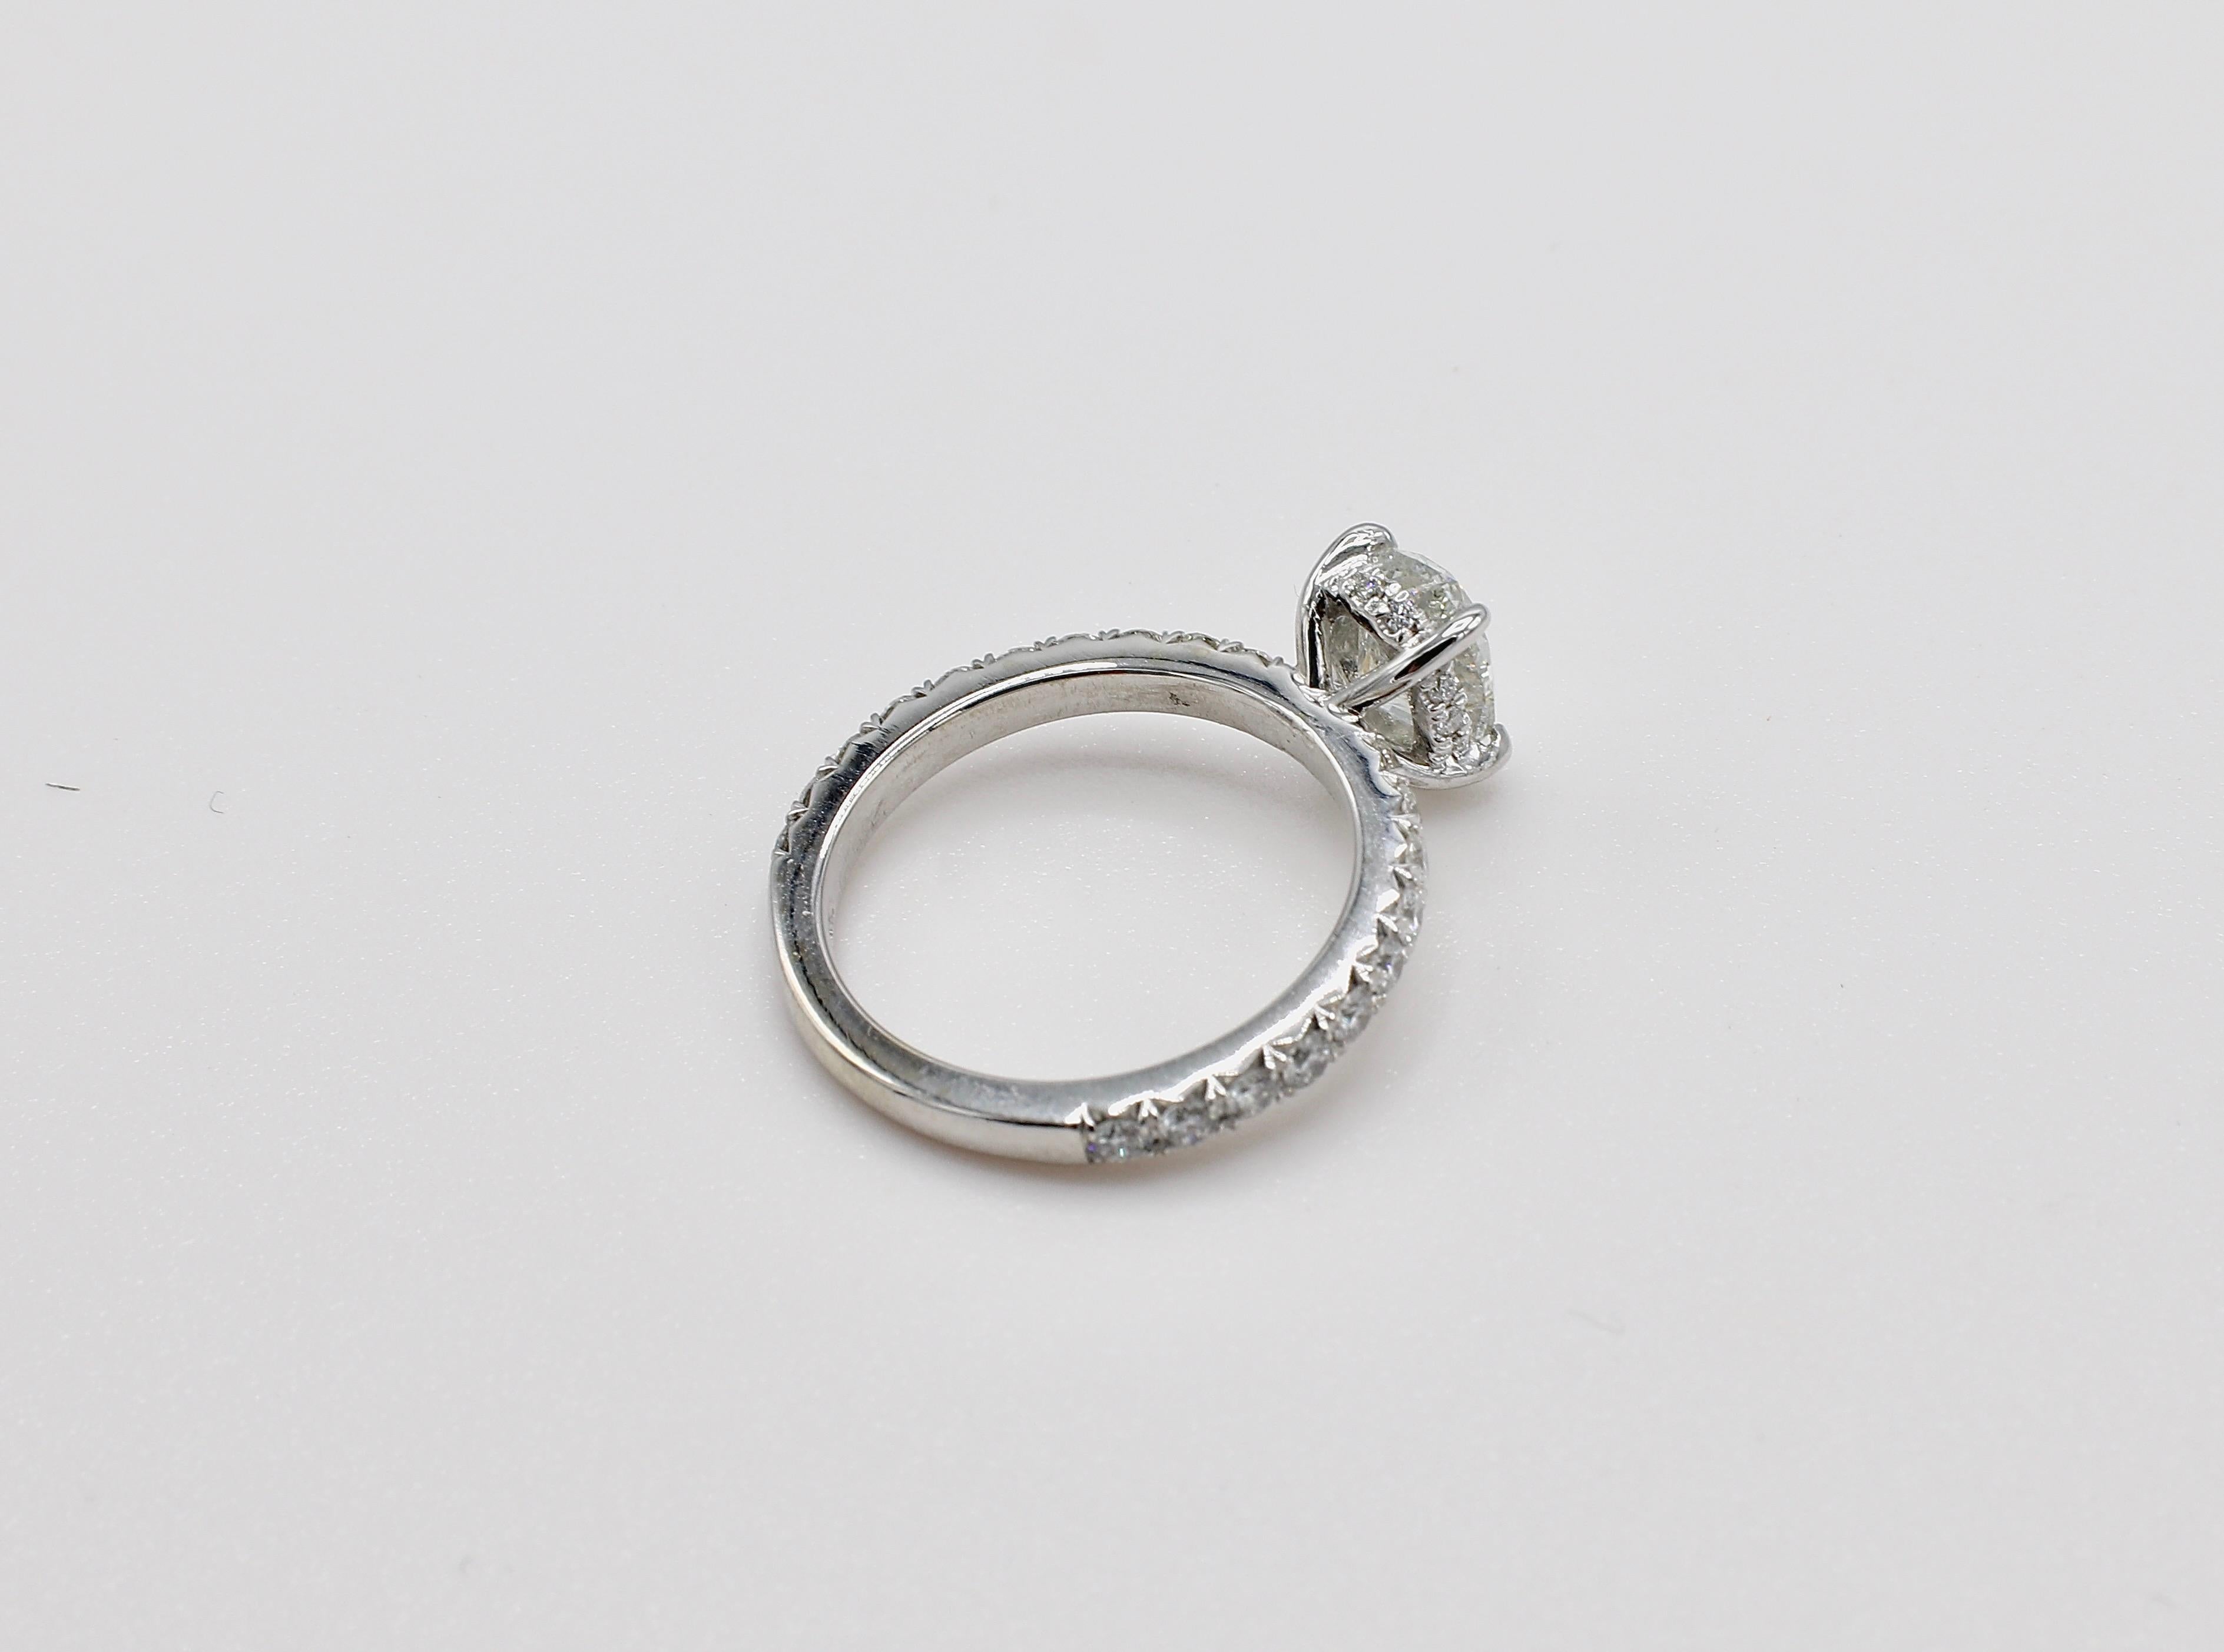 0.8 carat oval diamond ring